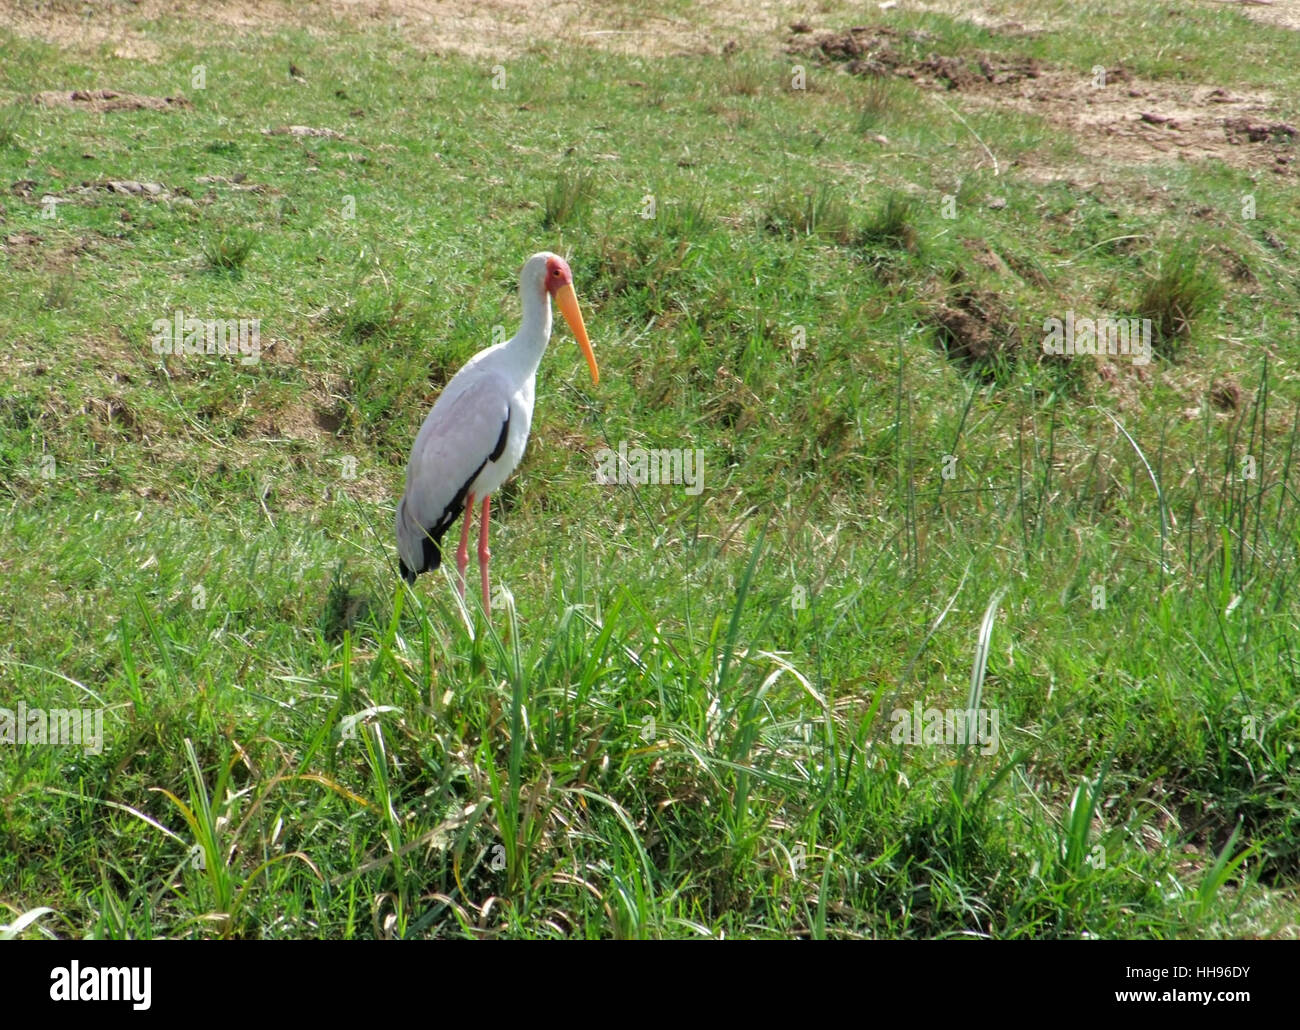 Paysage ensoleillé y compris un oiseau nommé 'Yellow-billed Stork' en Ouganda (Afrique) Banque D'Images